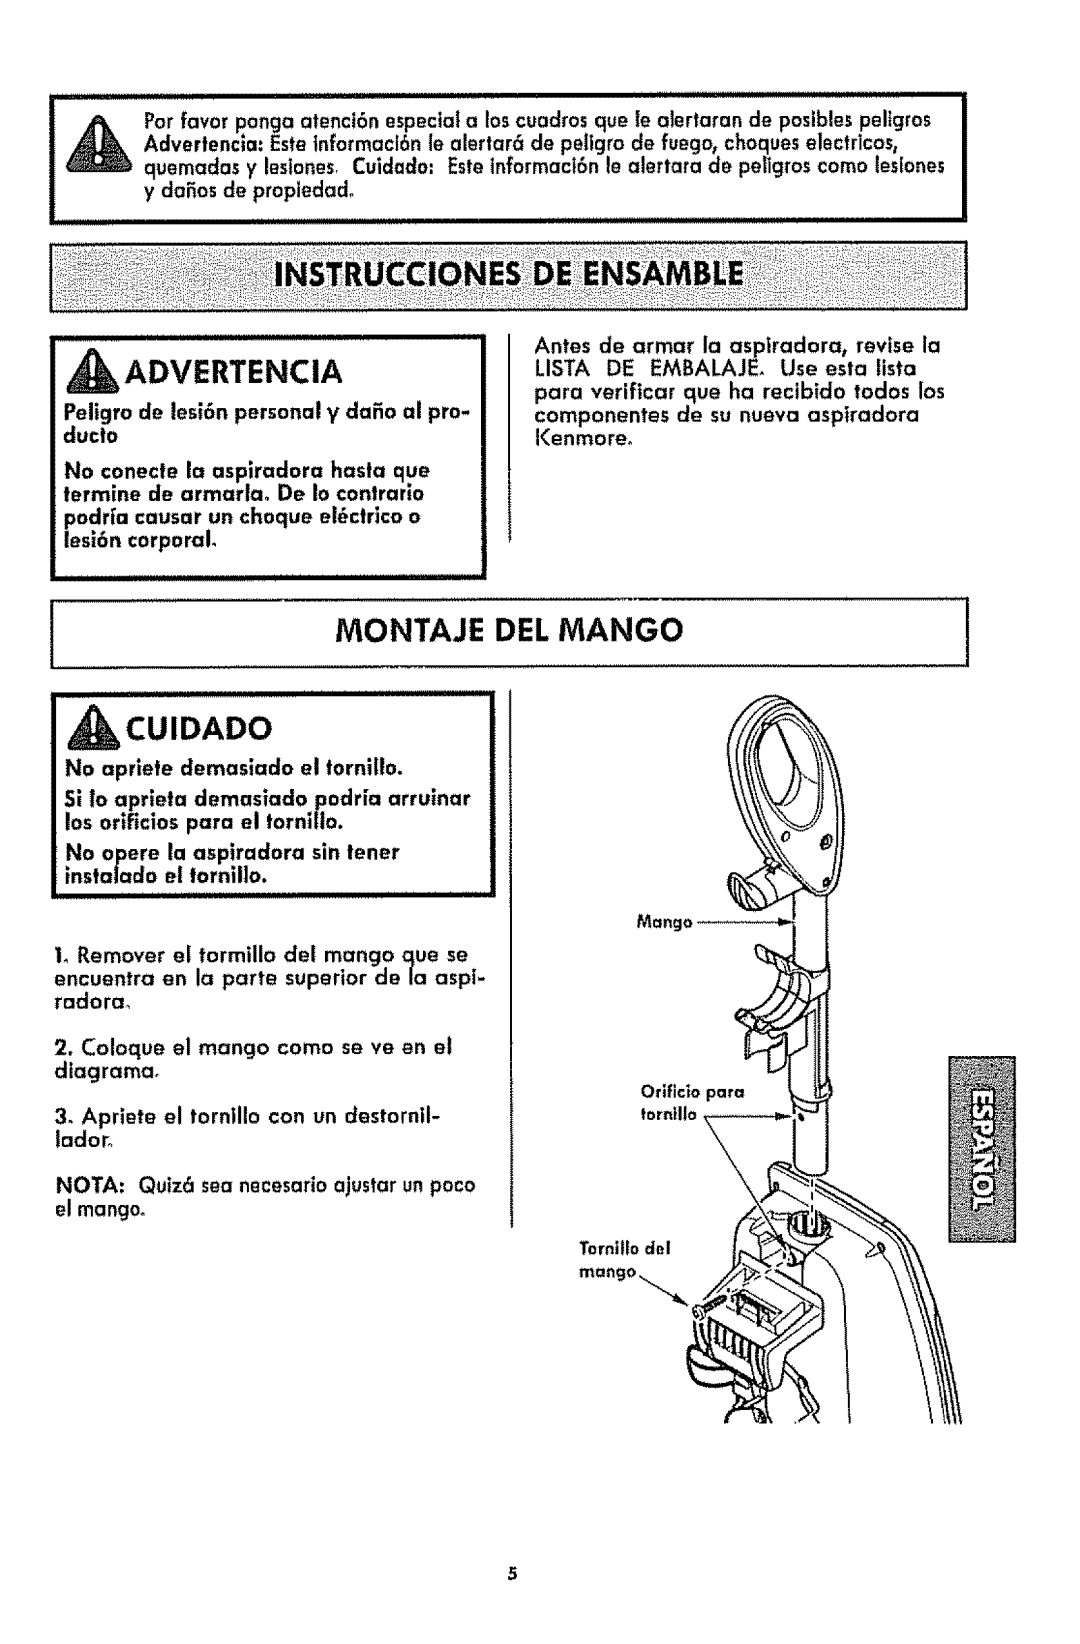 Kenmore 116.3181 manual _Advertencia, Montaje Del Mango, Cuidado, Apriete el torntllo con un destorntl- lador 